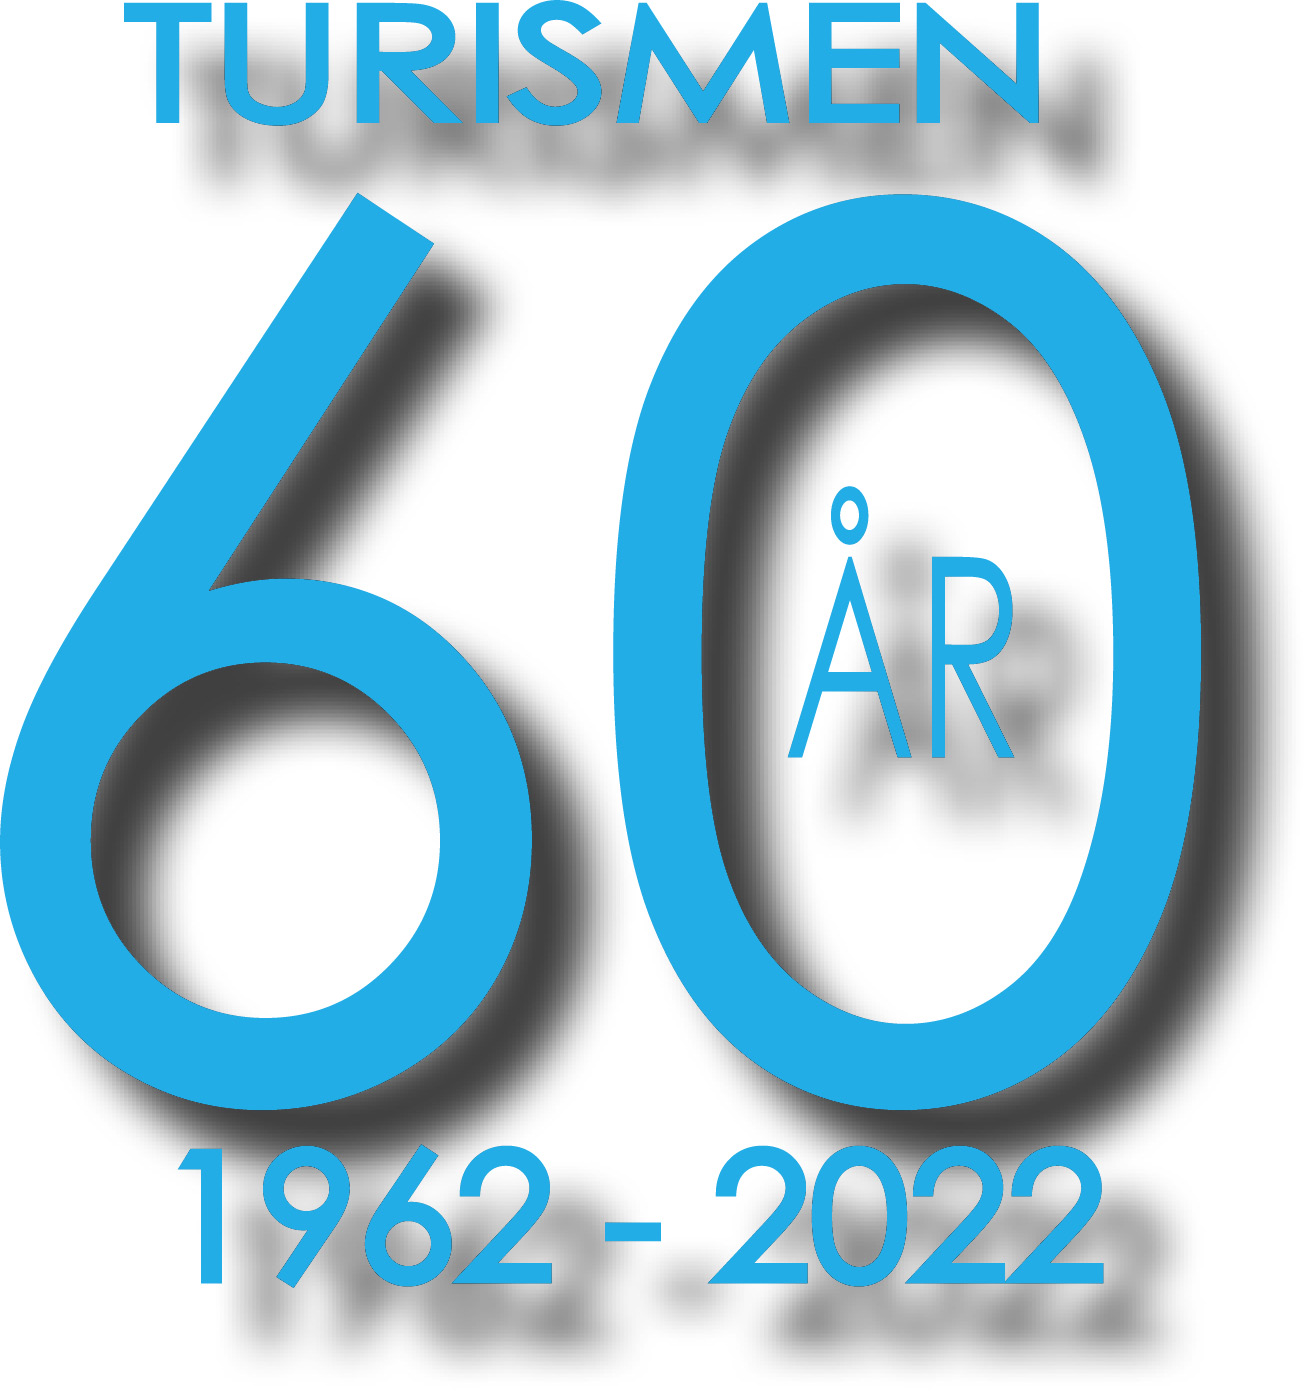 Logotipo turismne 60 år